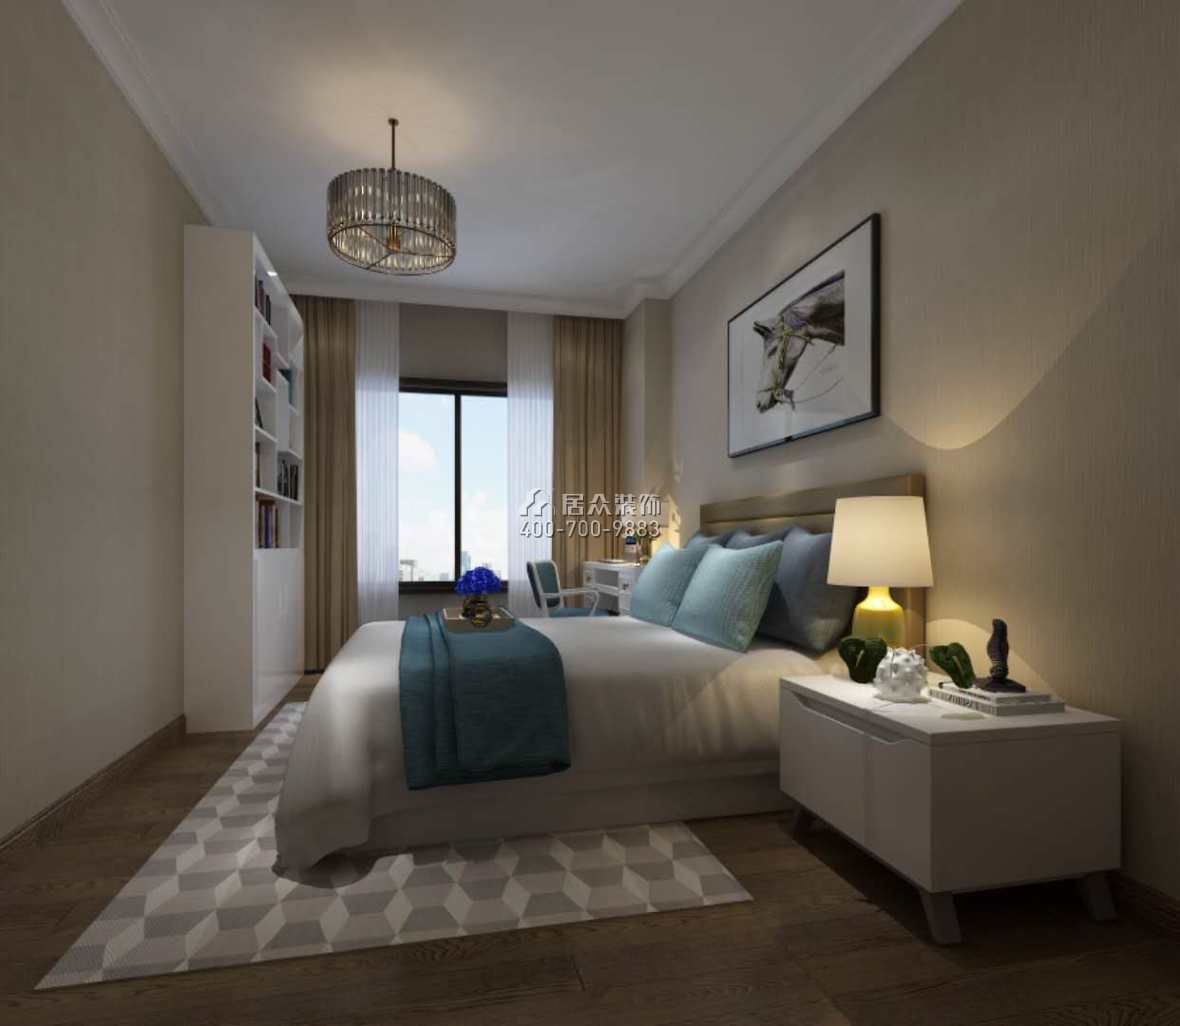 中倫東海岸150平方米歐式風格平層戶型臥室裝修效果圖